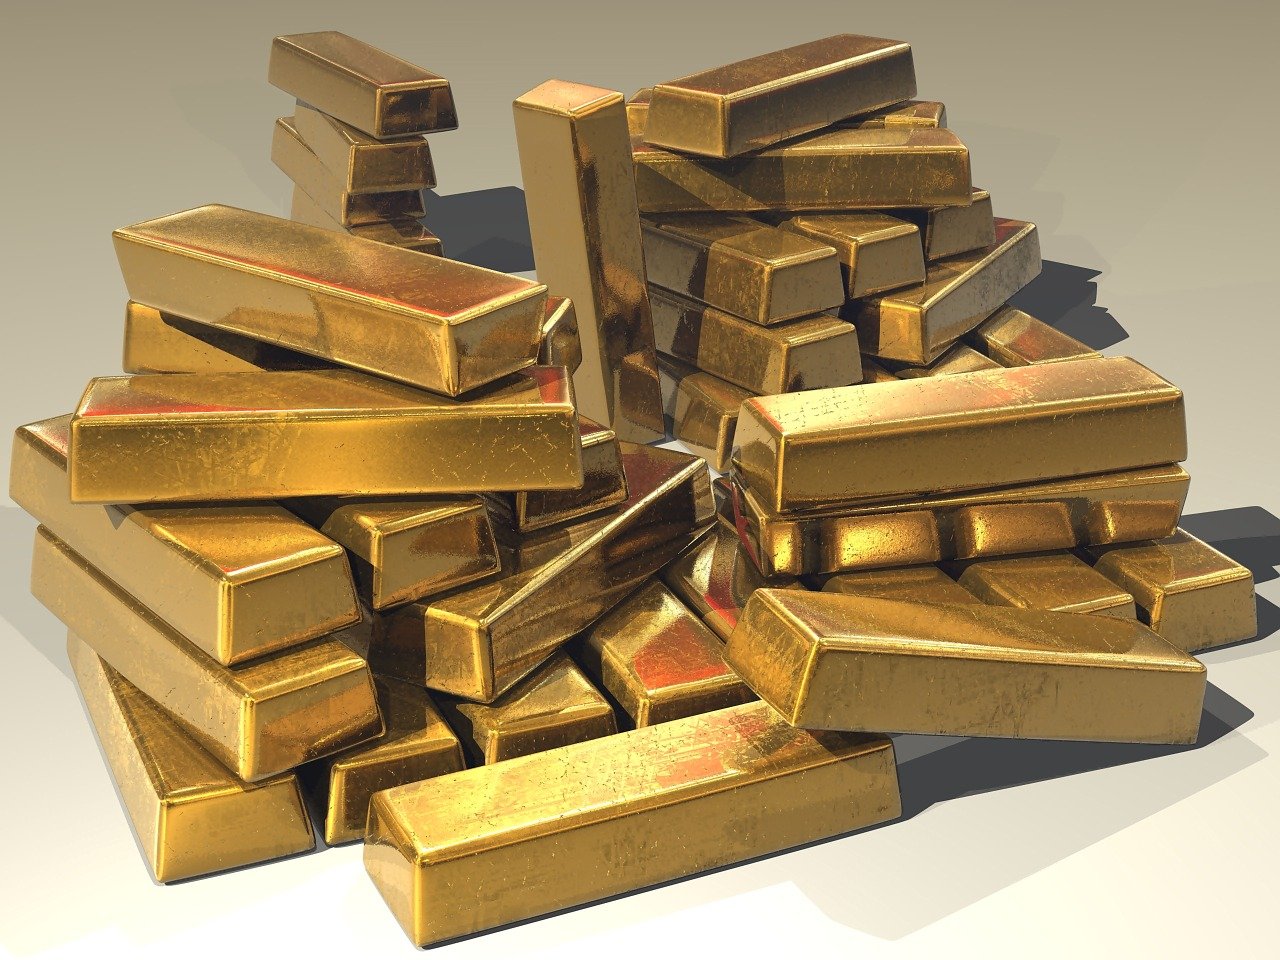 انهيار في أسعار الذهب.. سجل أدنى مستوى منذ 8 أشهر وأسباب هذا التراجع